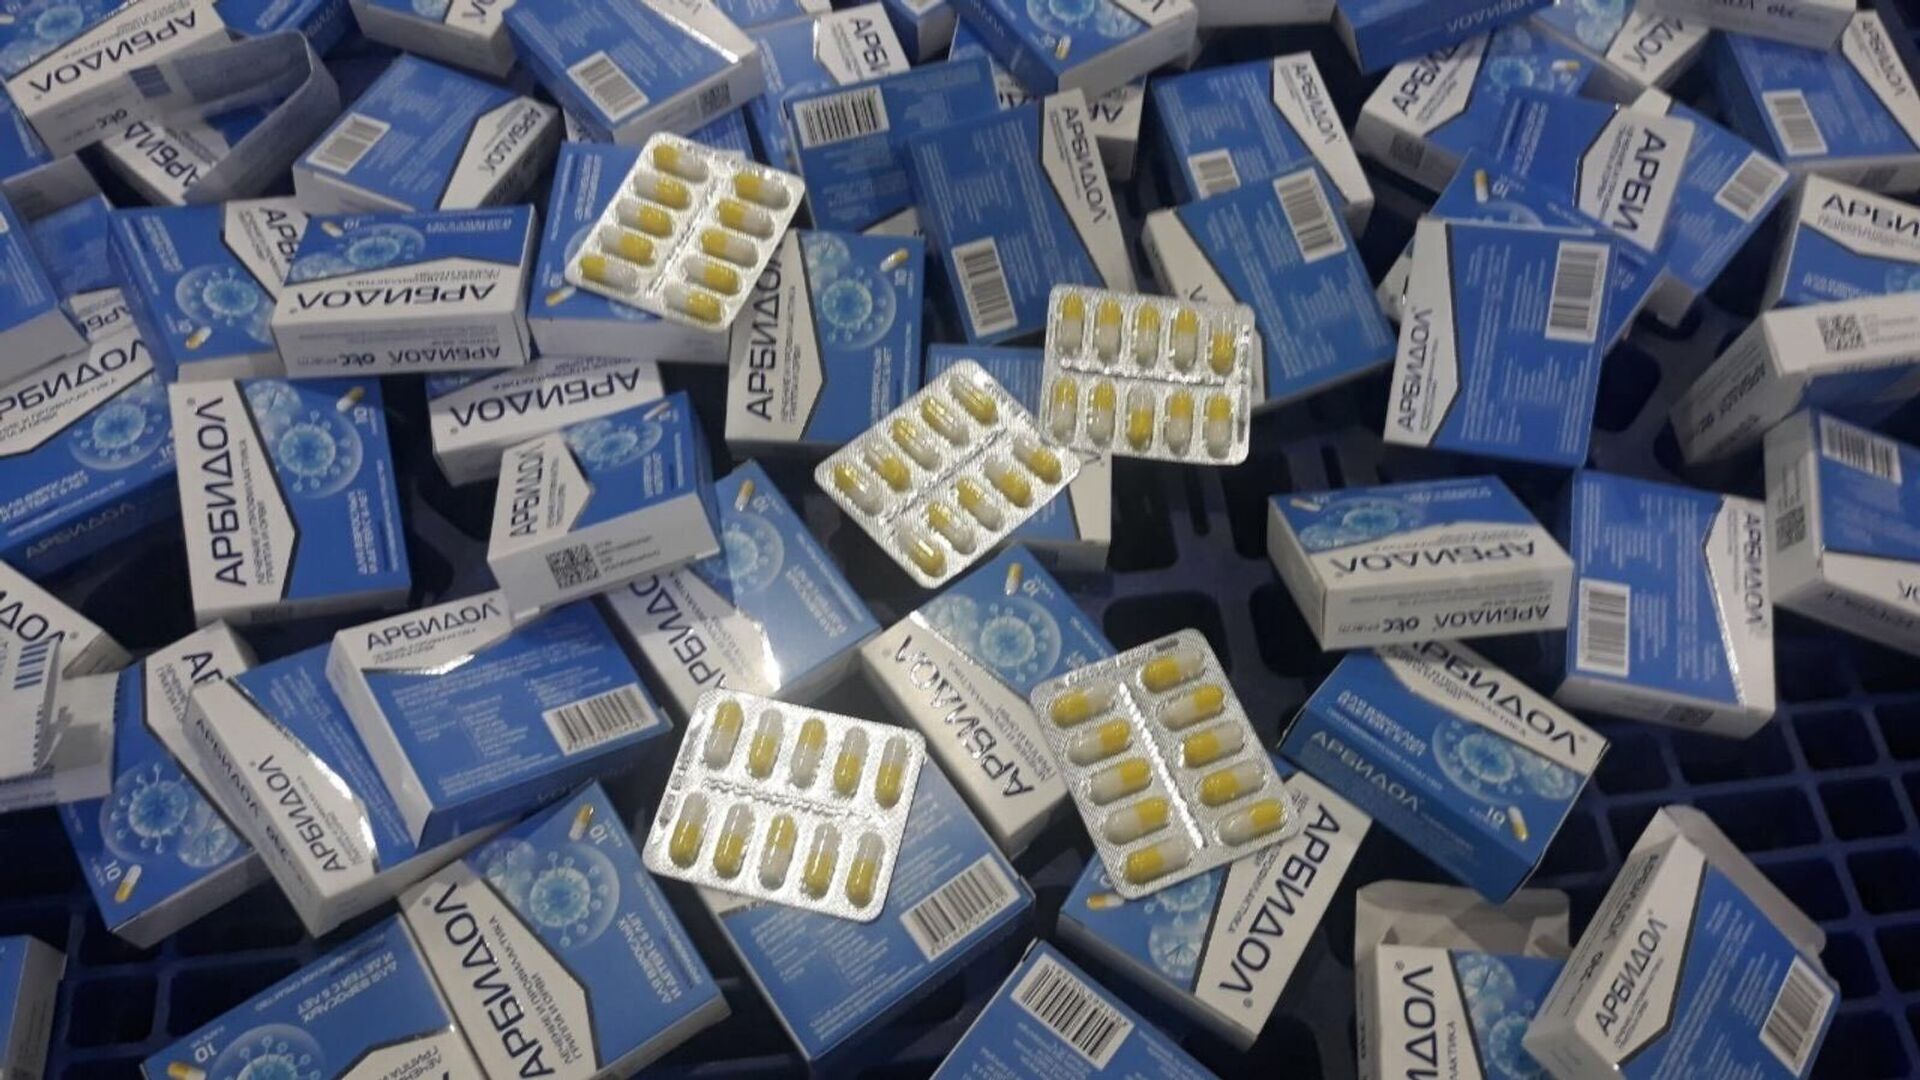 330 hộp thuốc Arbidol - mặt hàng được quảng cáo trên thị trường dùng trong điều trị Covid-19 bị lực lượng Hải quan thu giữ - Sputnik Việt Nam, 1920, 05.10.2021